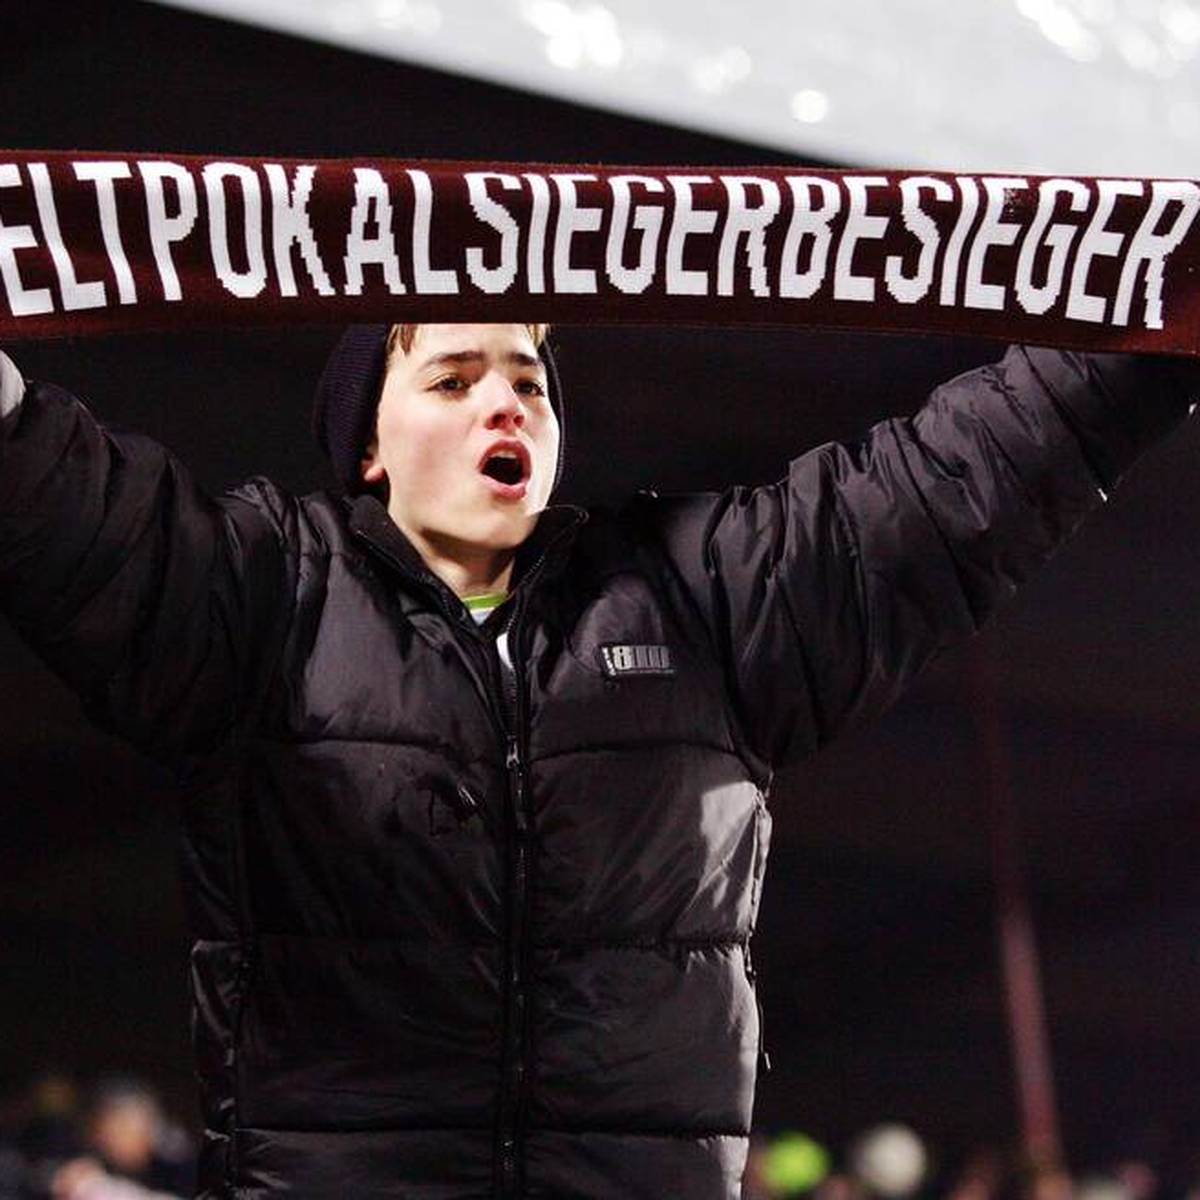 Ein St. Pauli Fan präsentiert stolz einen Schal mit der Aufschrift Weltpokalsiegerbesieger